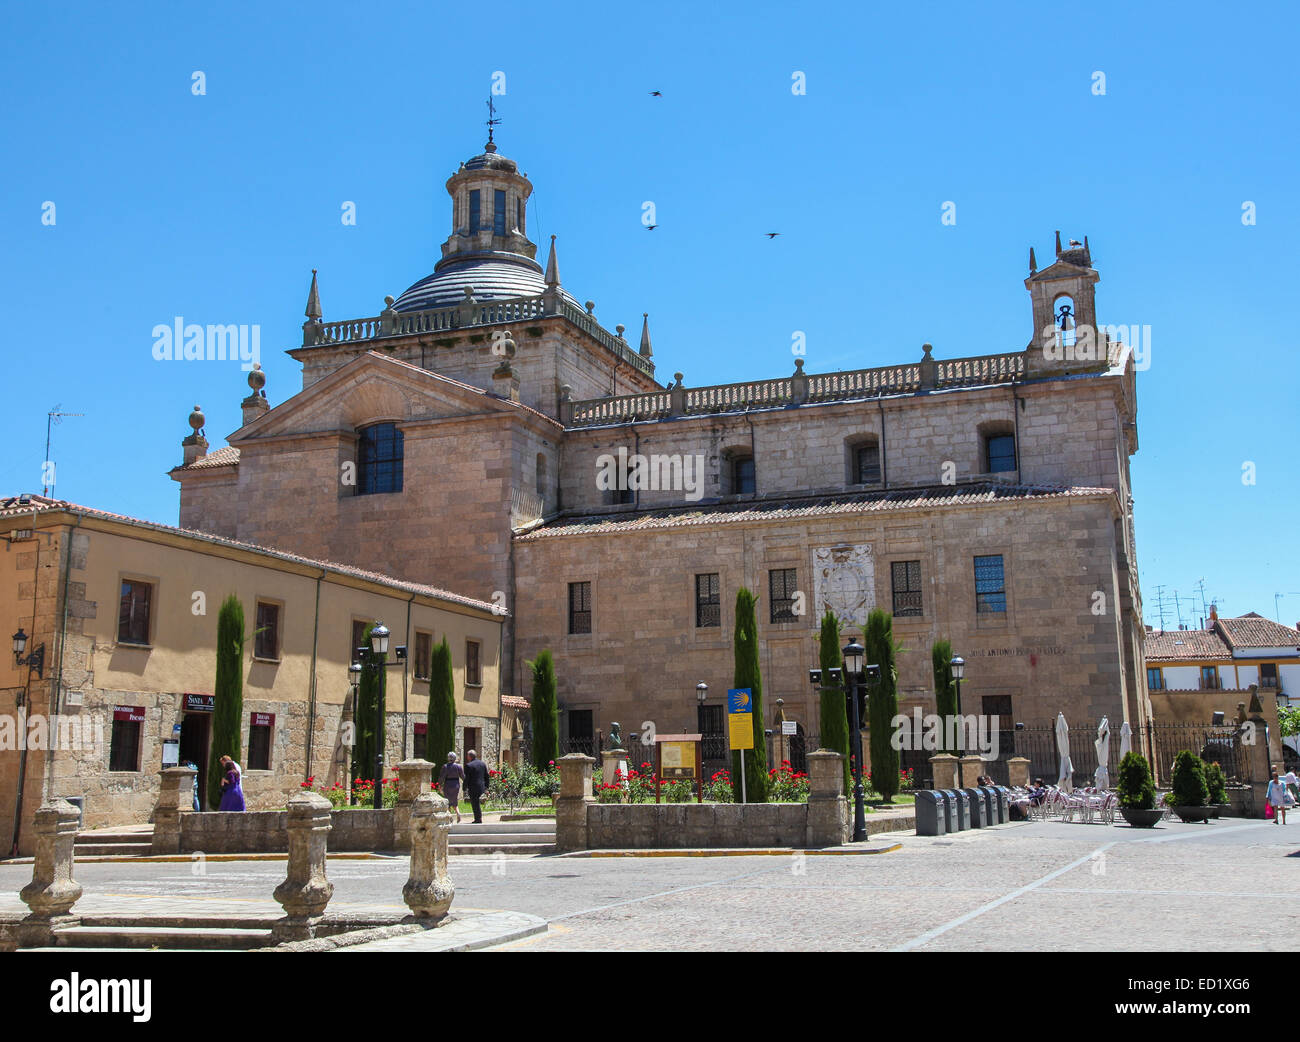 CIUDAD RODRIGO, SPAIN - JUNE 1, 2014: Facade of the Capilla de Cerralbo (16th Century) in Ciudad Rodrigo, a small cathedral city Stock Photo